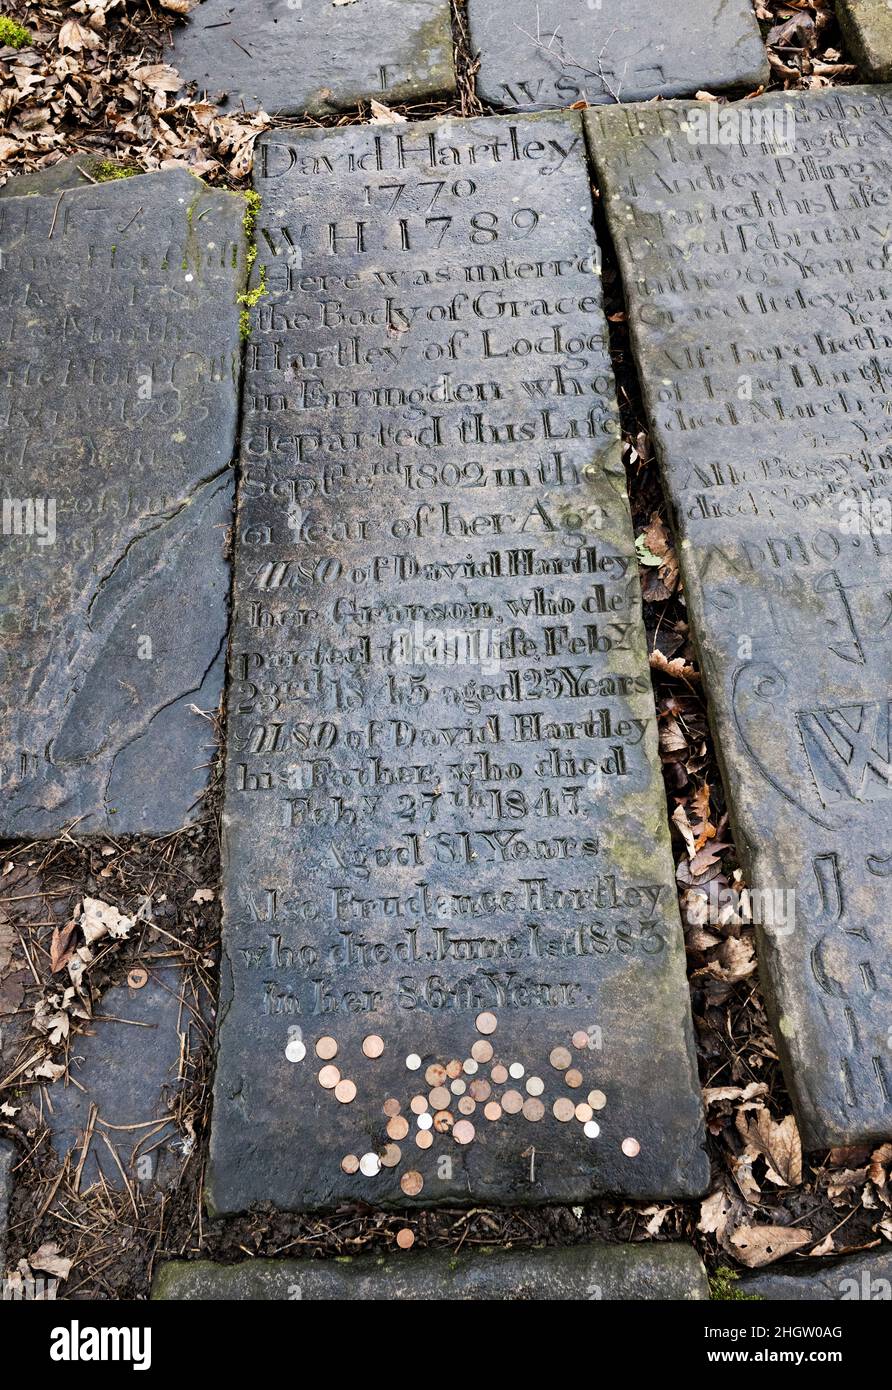 La tumba del 'Rey' David Hartley, líder del siglo 18th de los Cragg Vale Coiners, Heptonstall churchyard, Calderdale, West Yorkshire, Reino Unido. Foto de stock